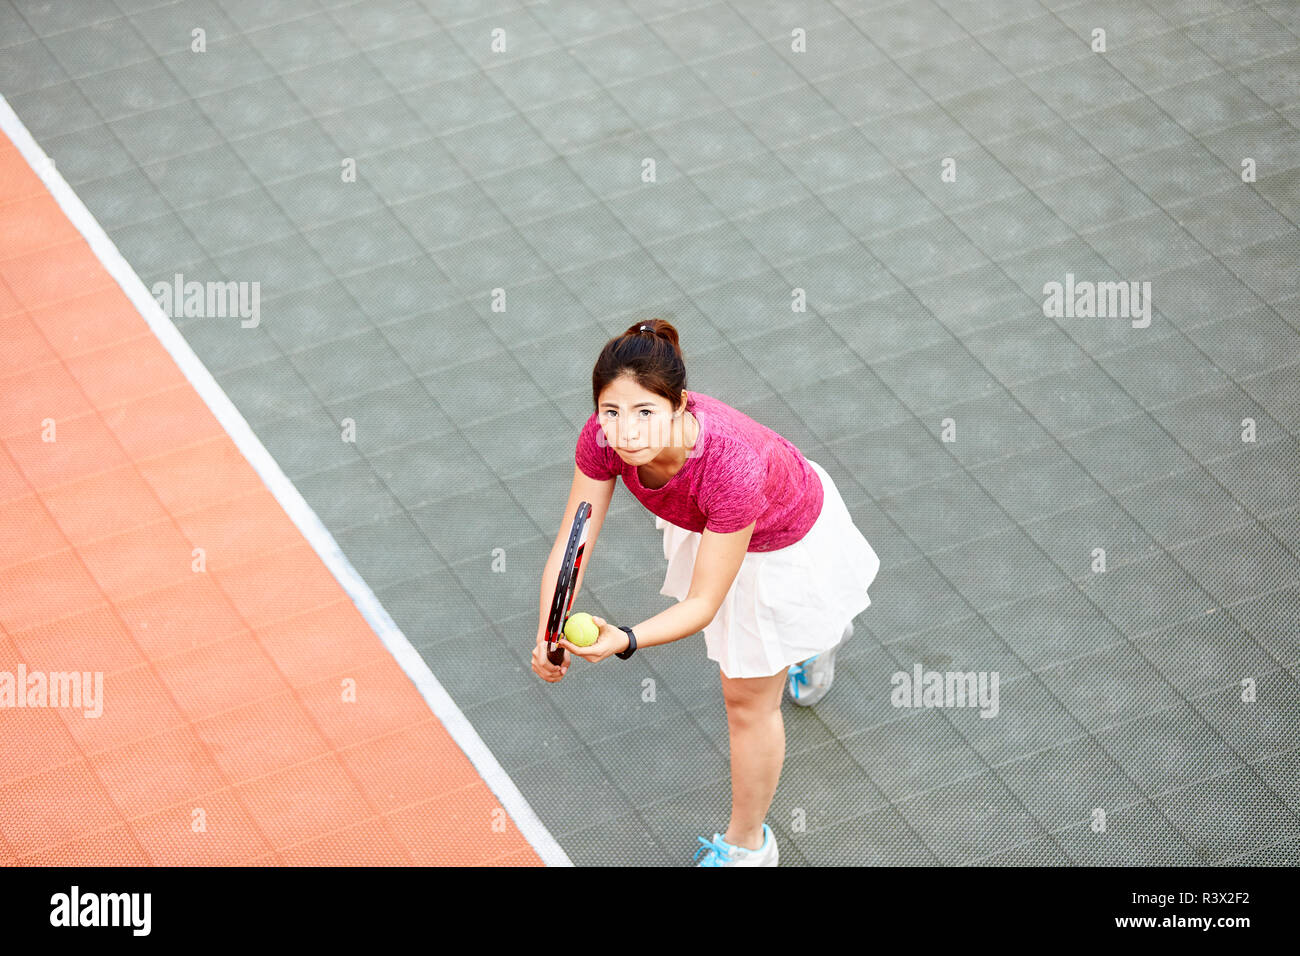 Young Asian tennis player prêt à servir Banque D'Images